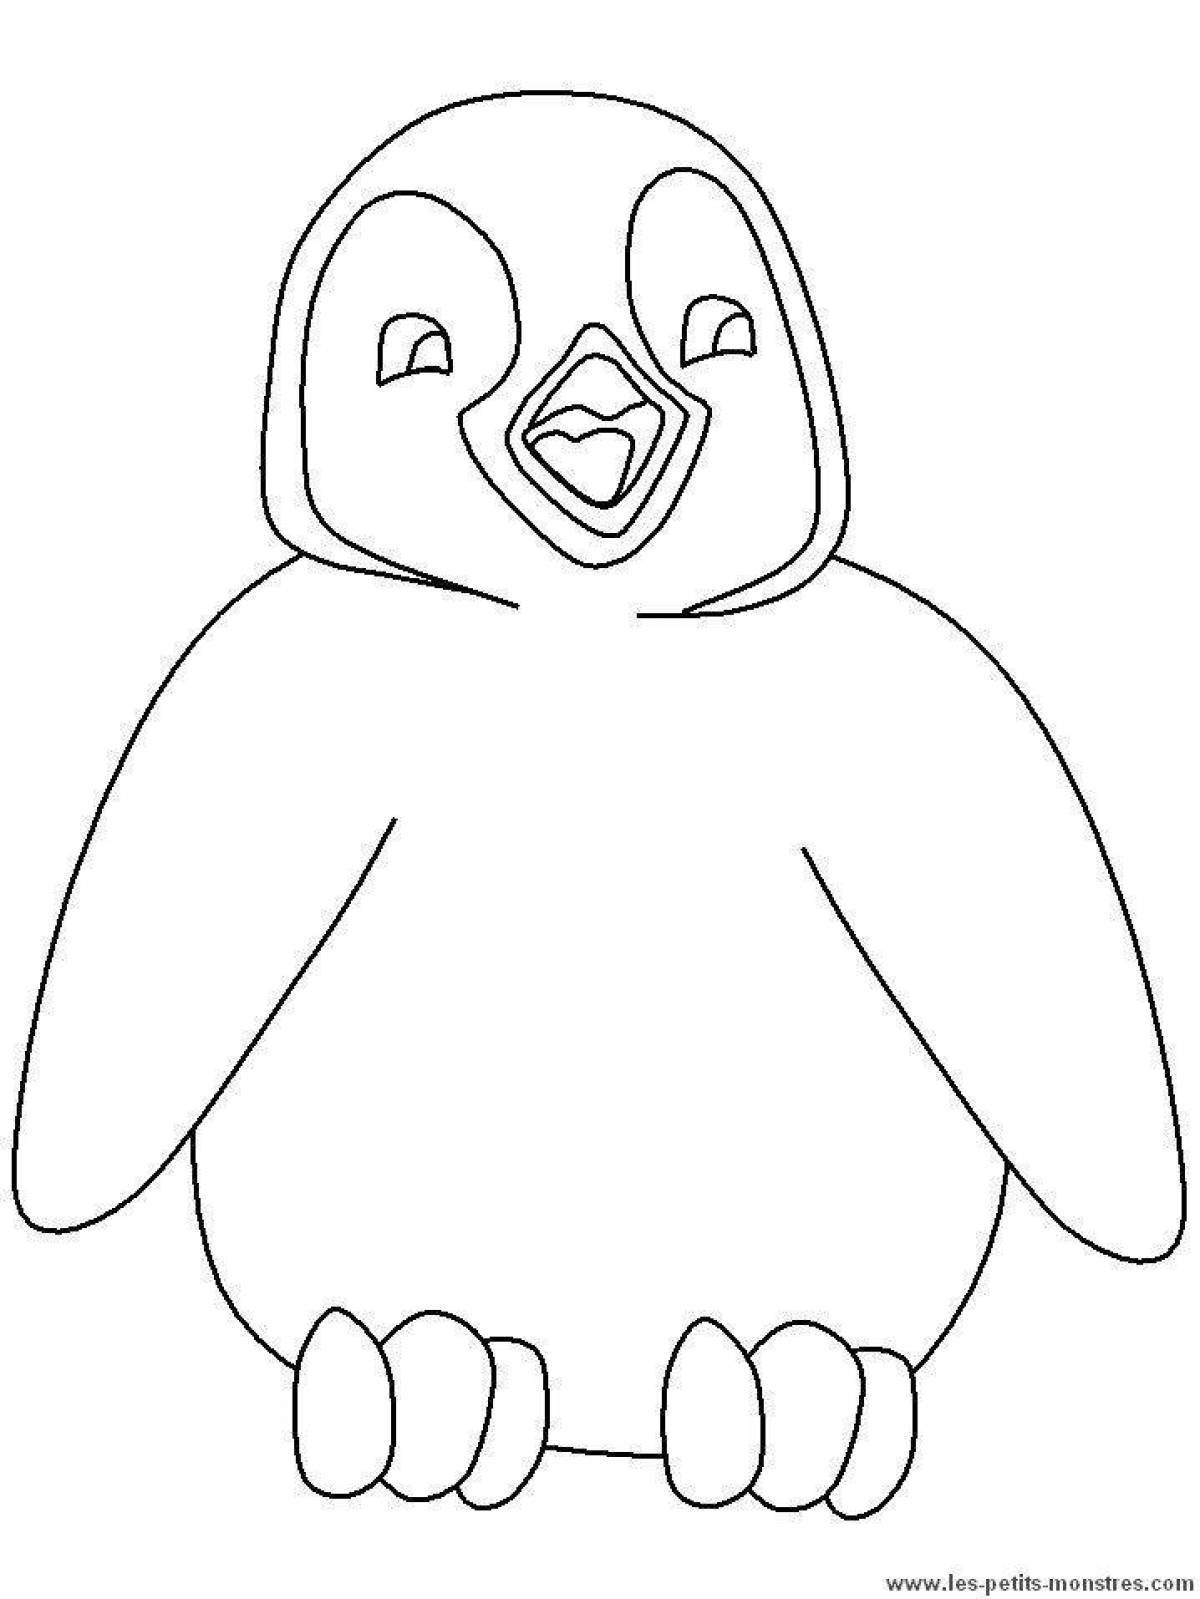 Причудливая раскраска пингвинов для детей